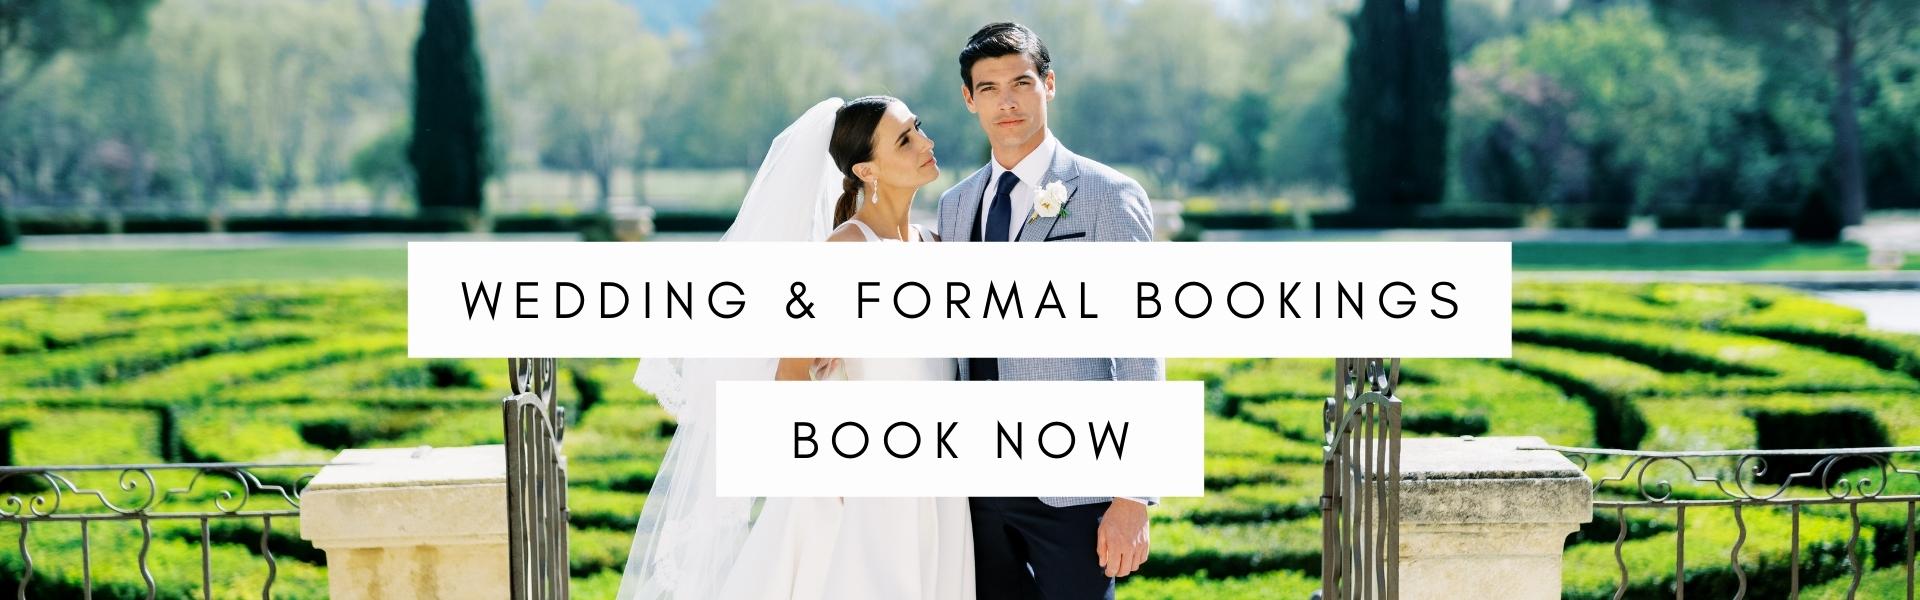 Wedding & Formal Bookings